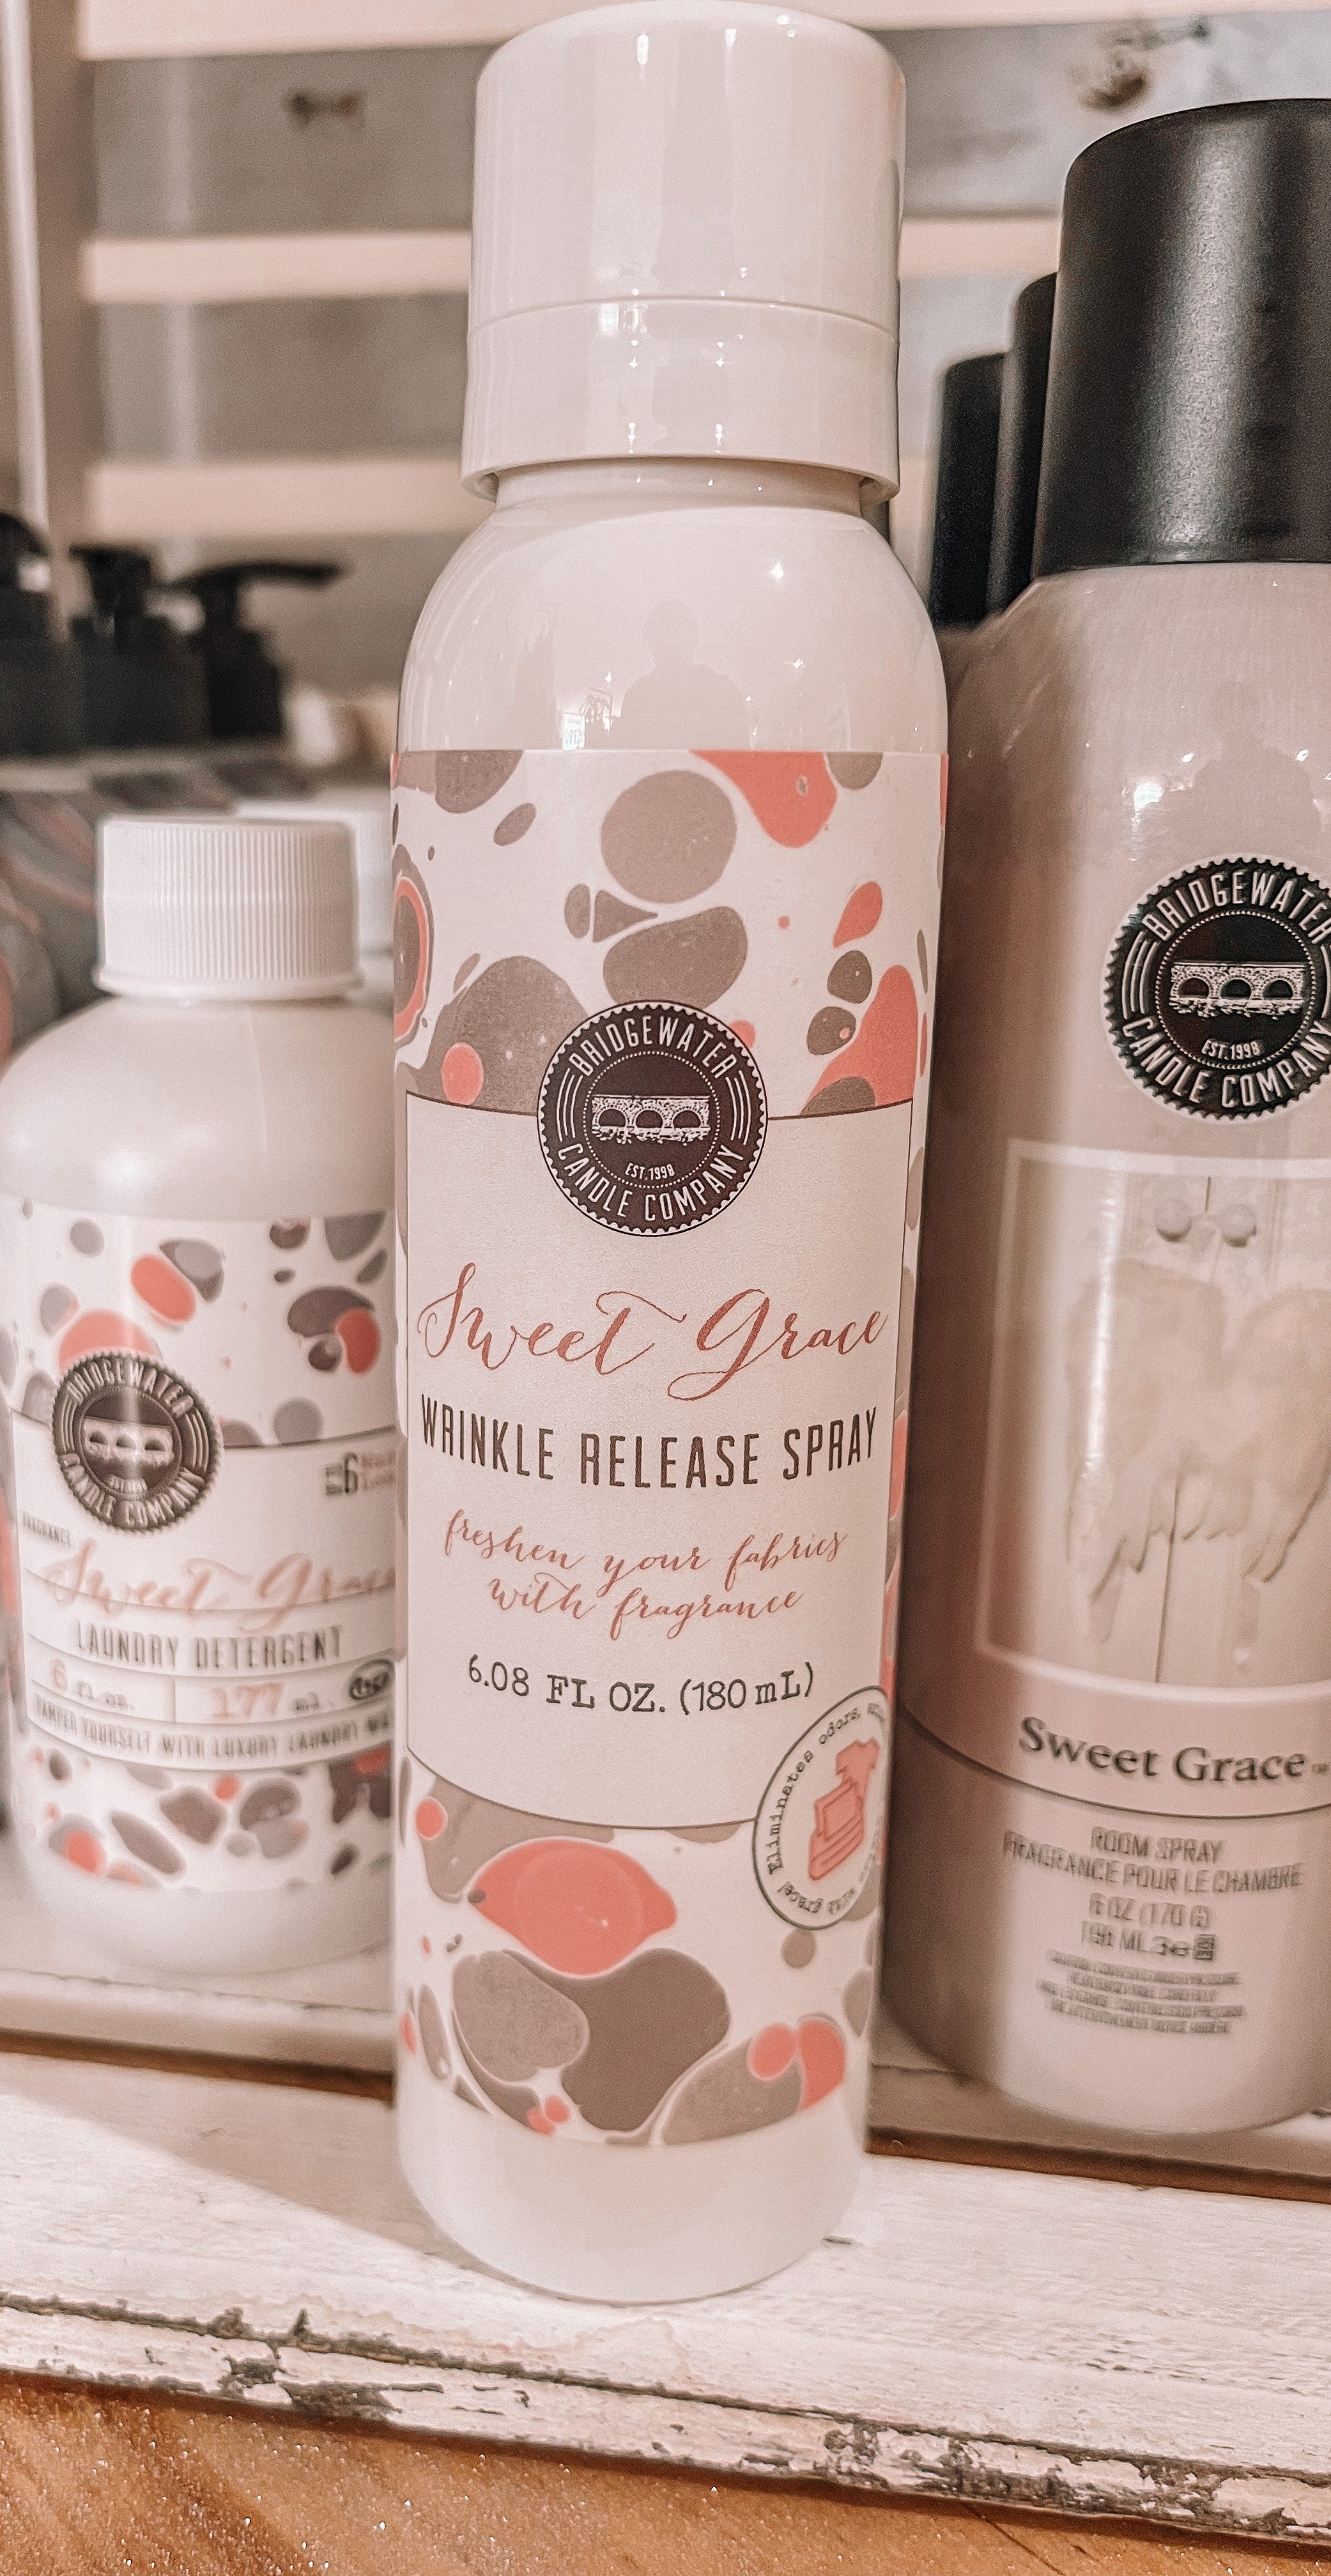 Sweet Grace Wrinkle Release Spray – LeLa's Boutique